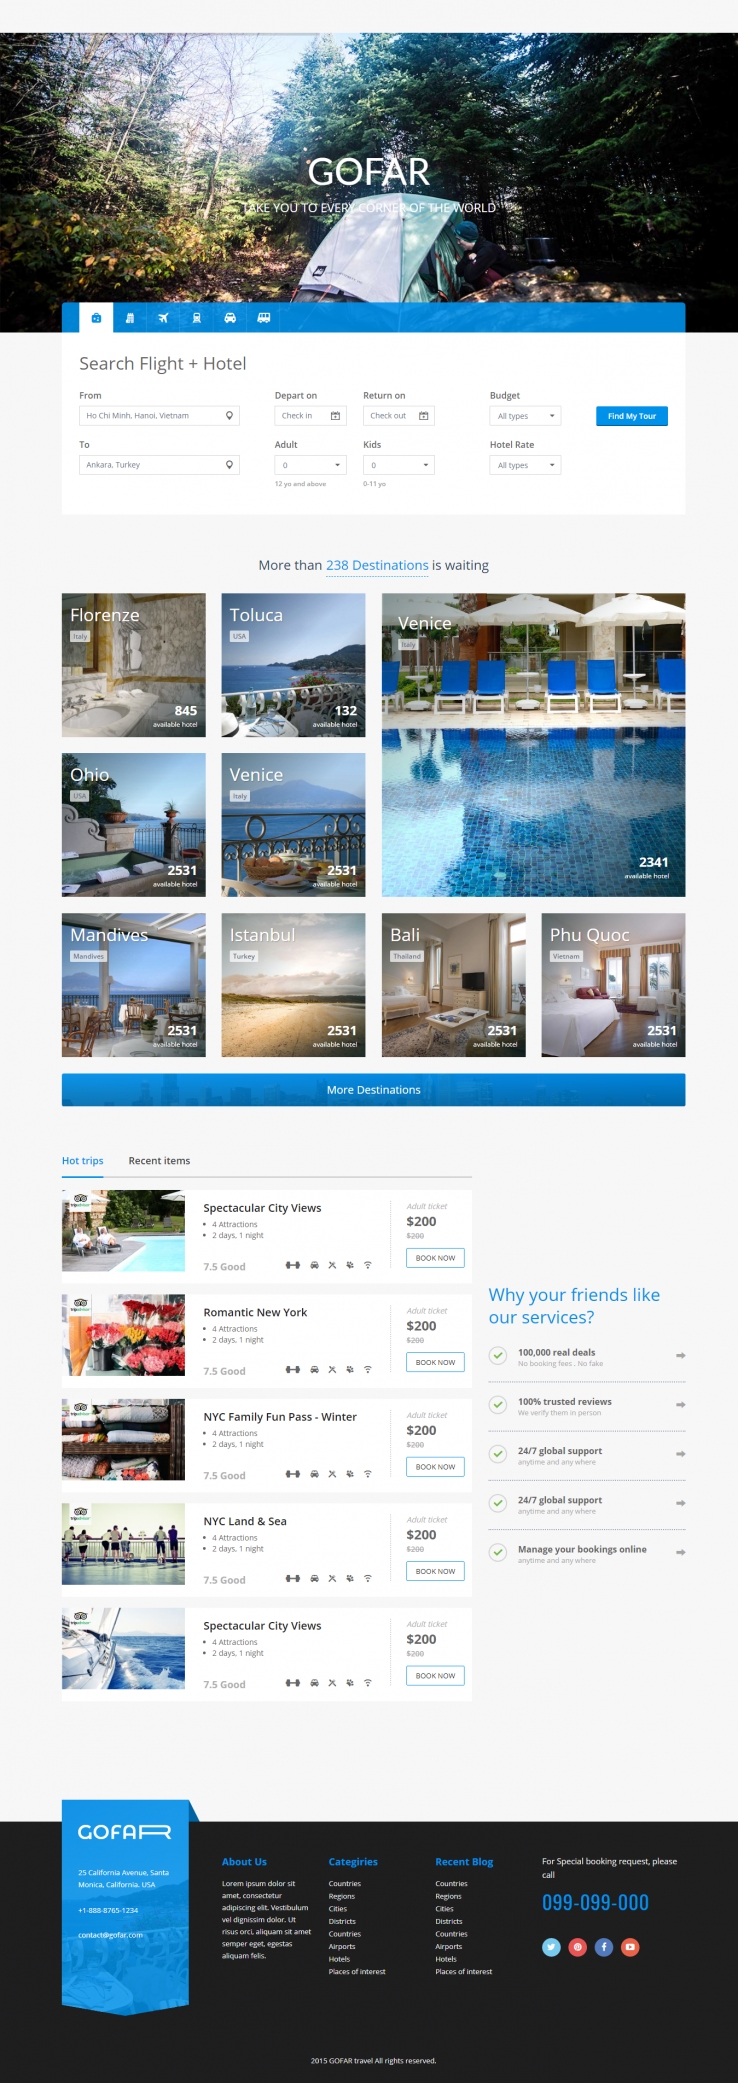 蓝色欧美风格的在线旅行服务企业网站源码下载